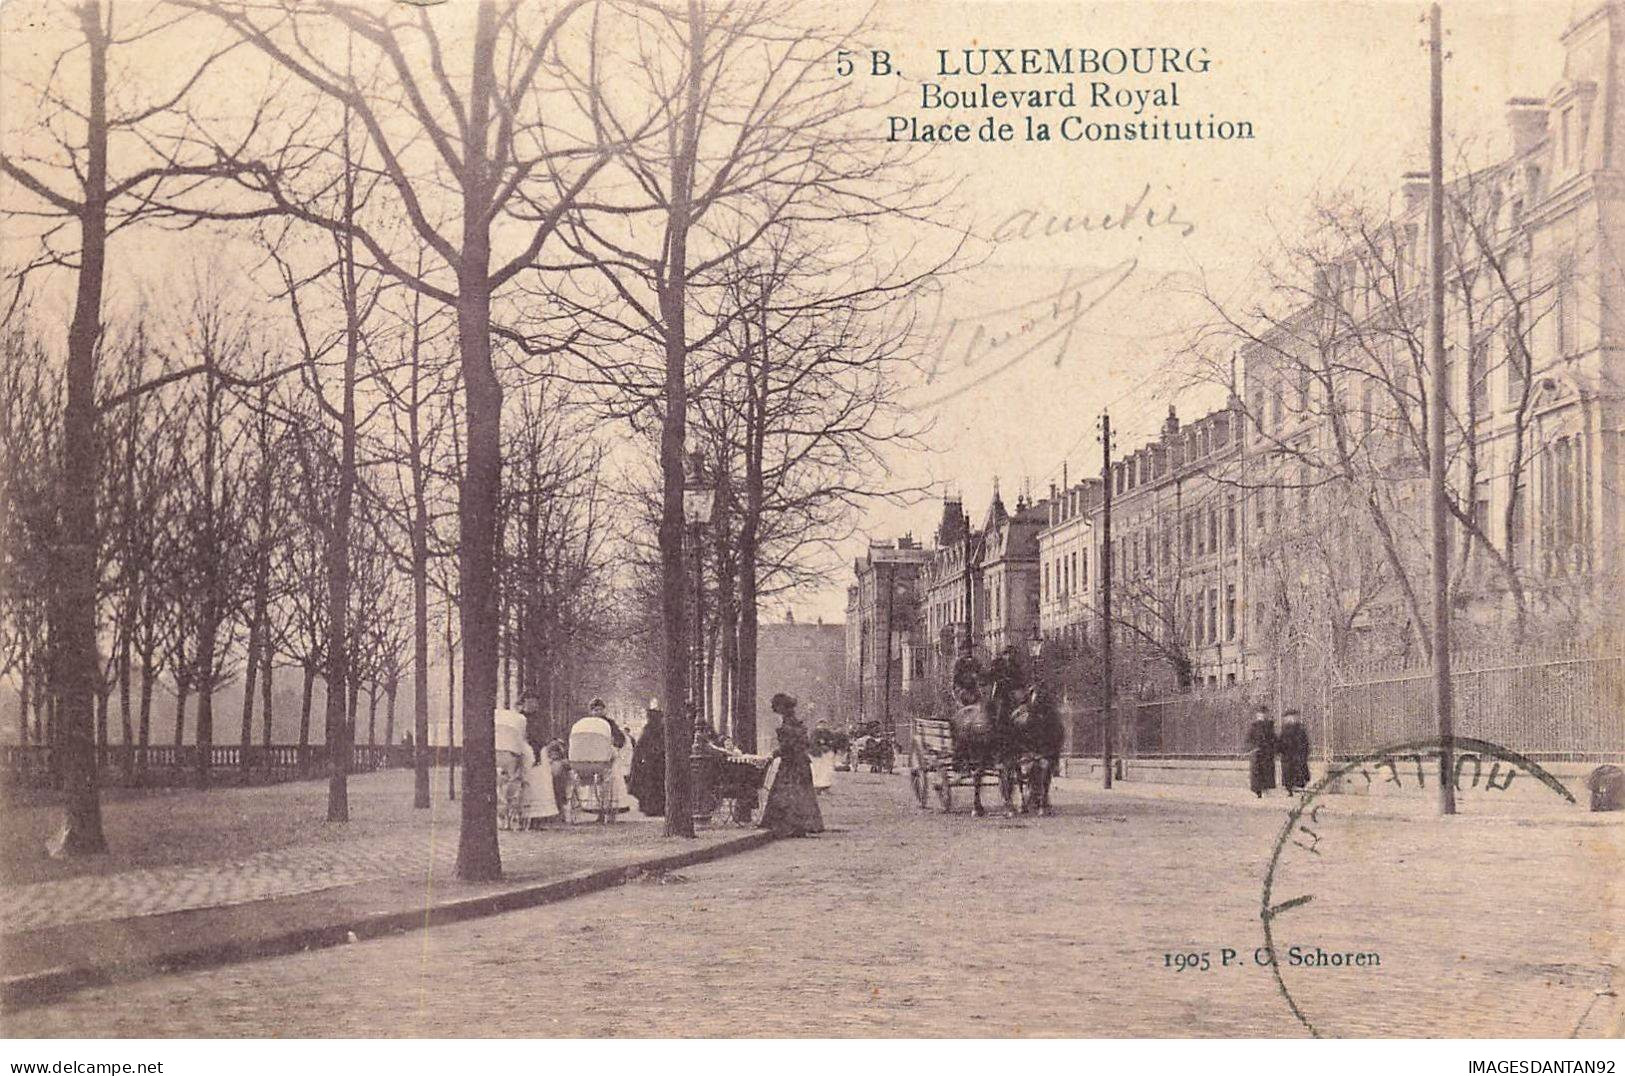 LUXEMBOURG #FG54497 LUXEMBURG BOULEVARD ROYAL PLACE DE LA CONSTITUTION - Luxembourg - Ville